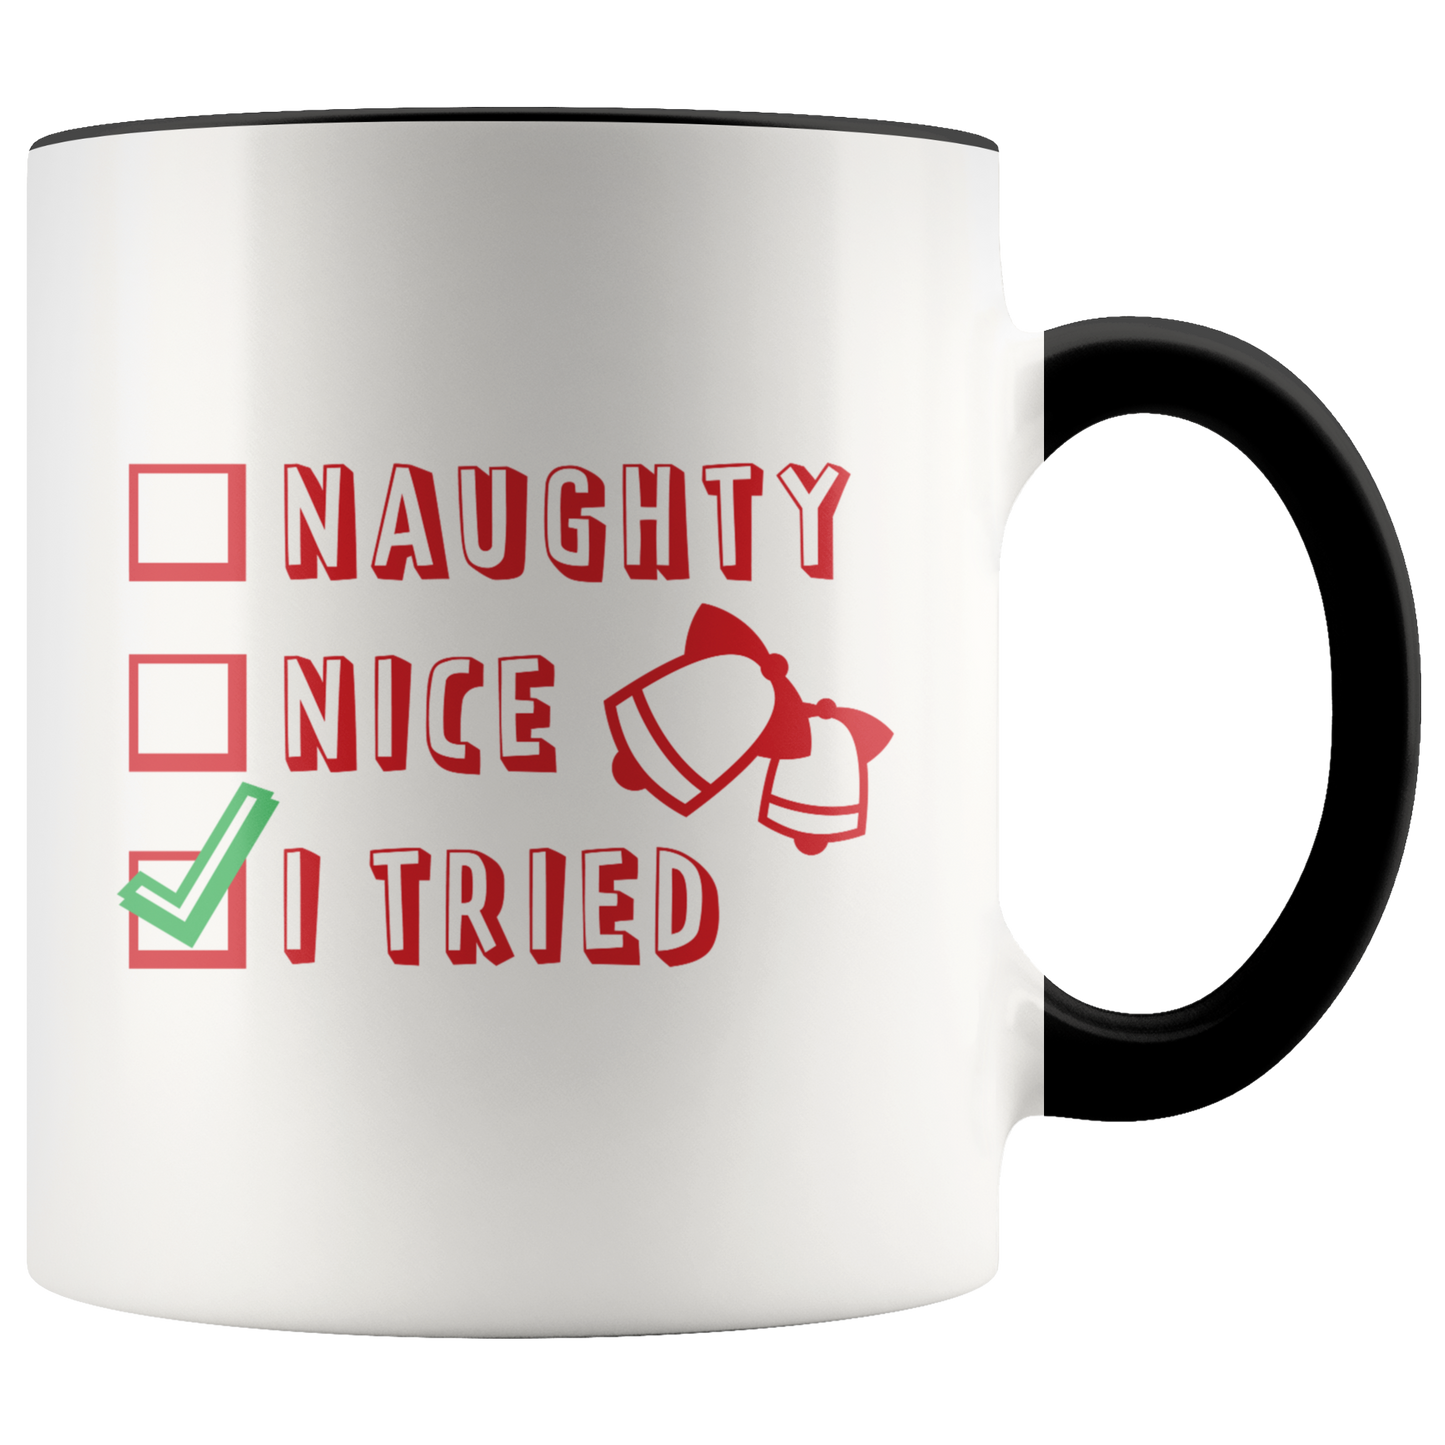 Christmas Coffee Mug Holiday Mug Gift for Her Him Funny Accent Mug Christmas Gift